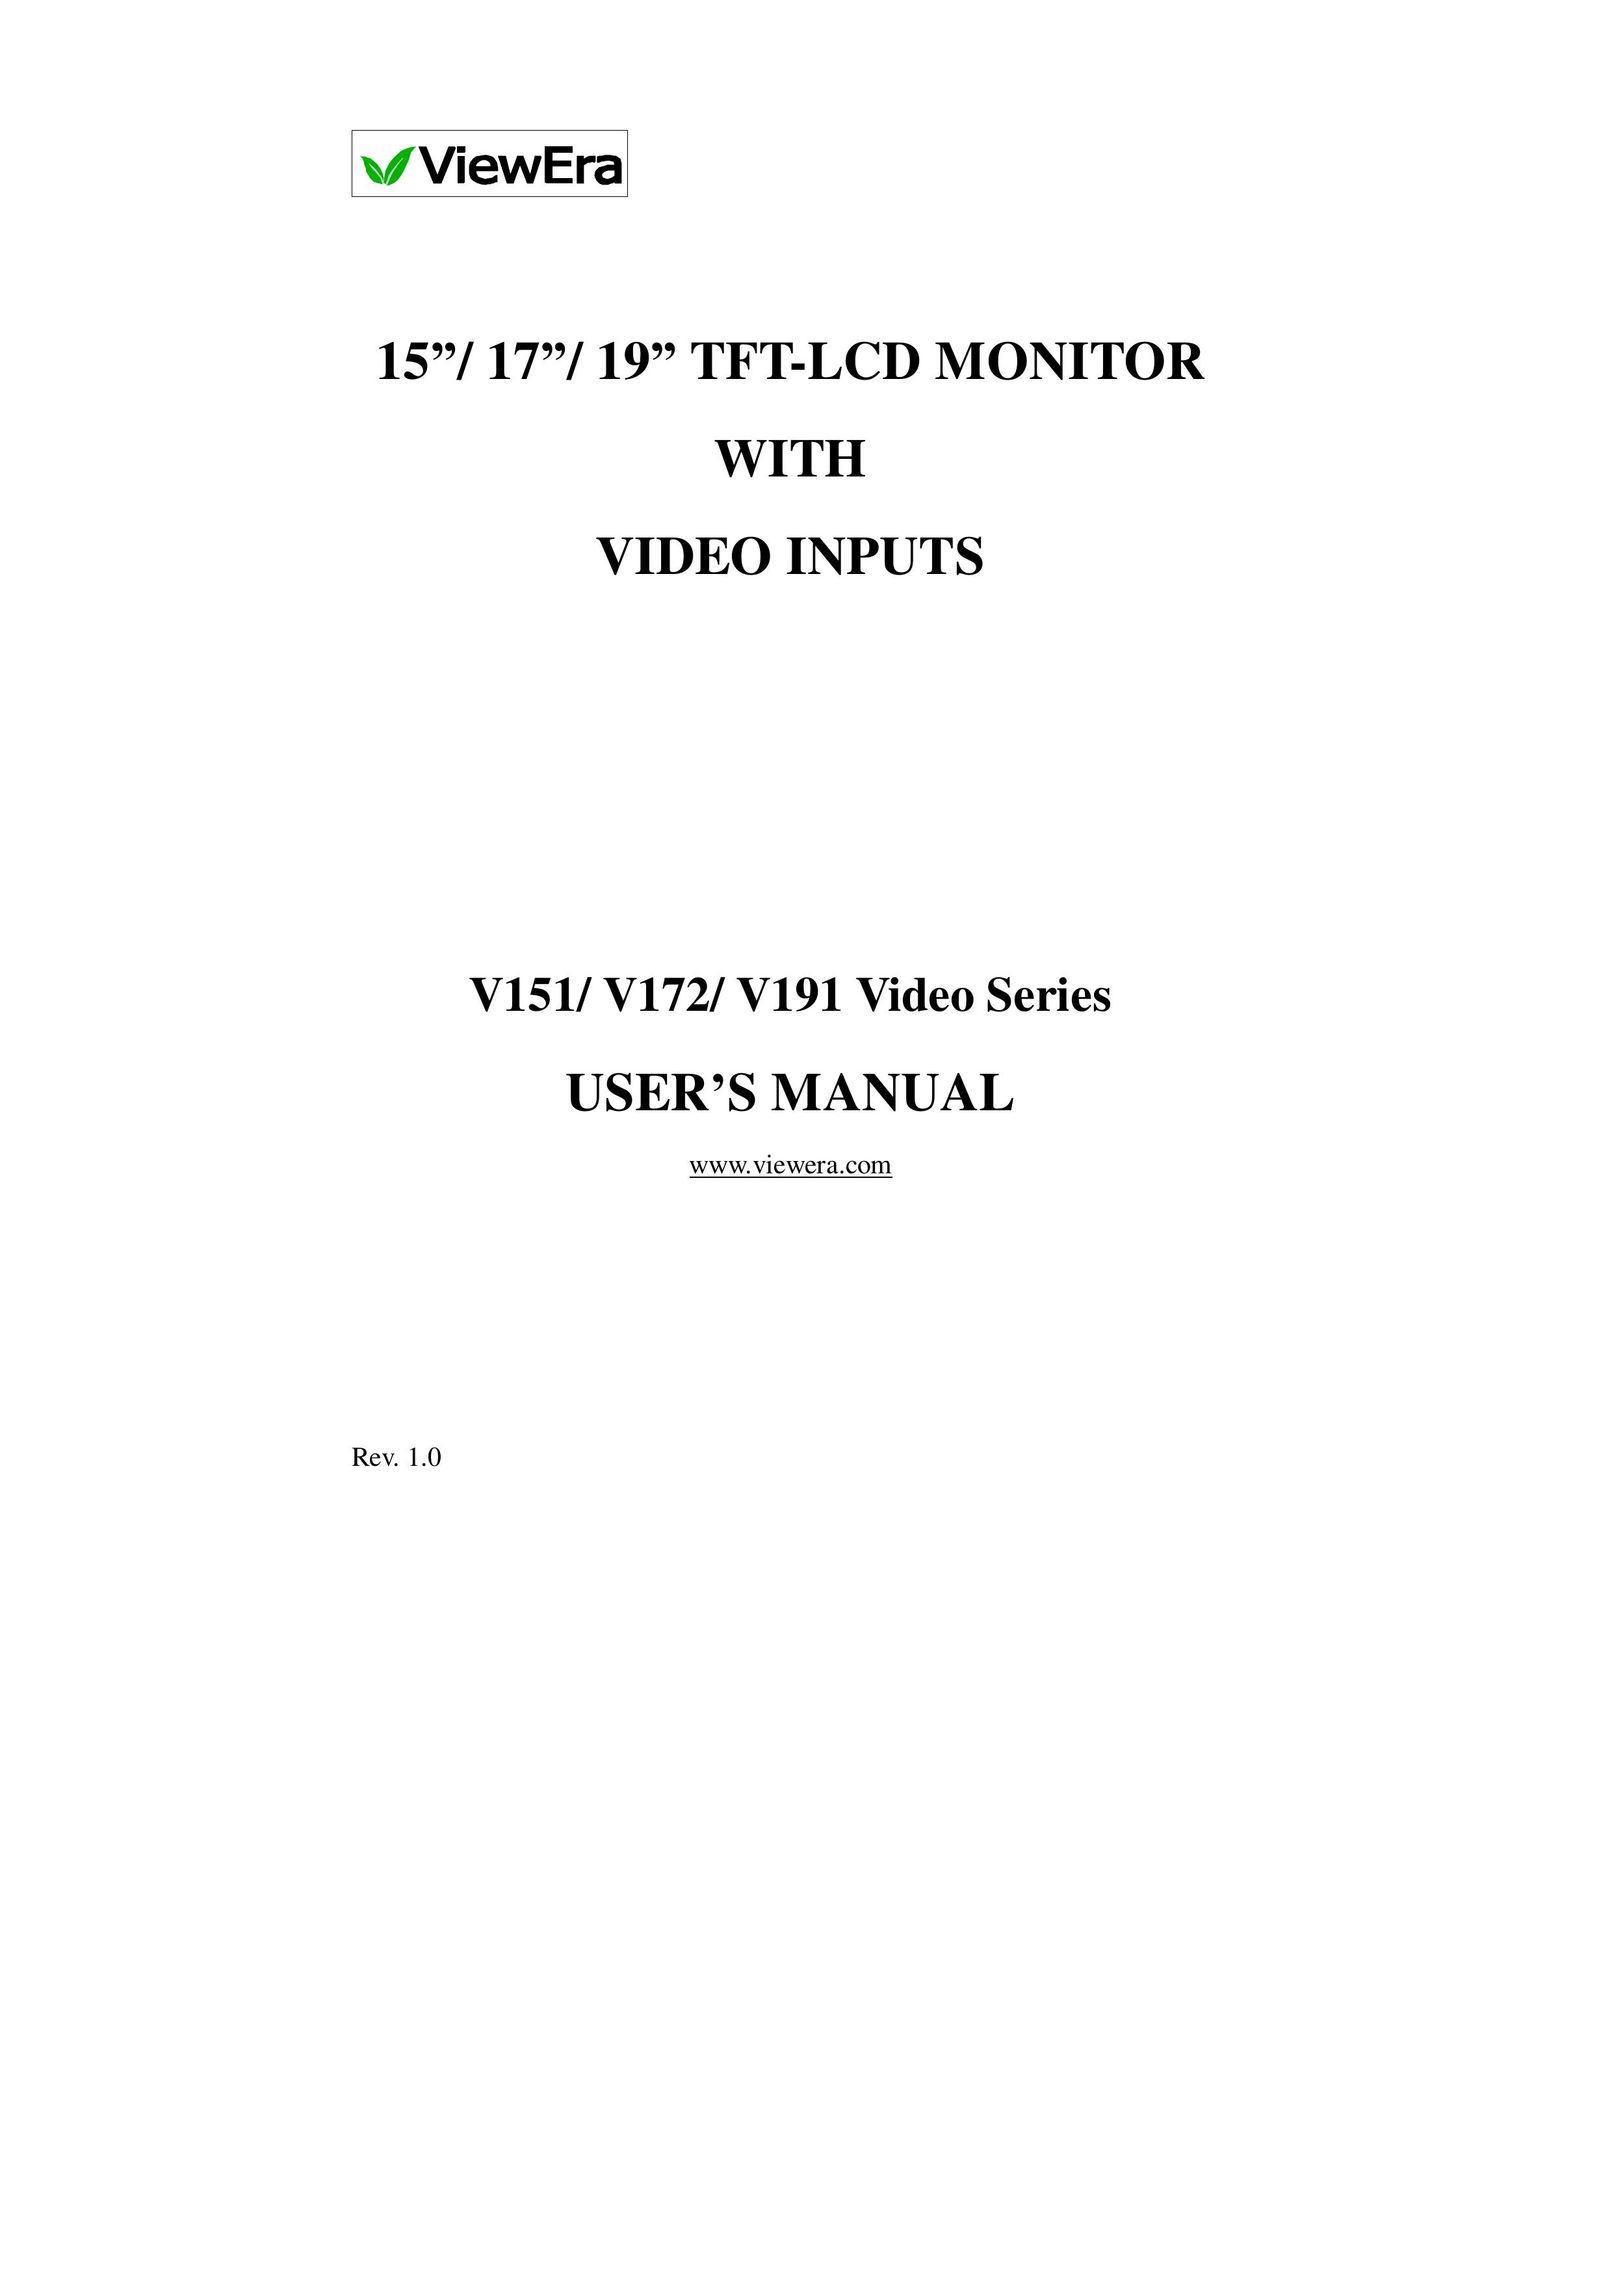 ViewEra V151 Series Computer Monitor User Manual